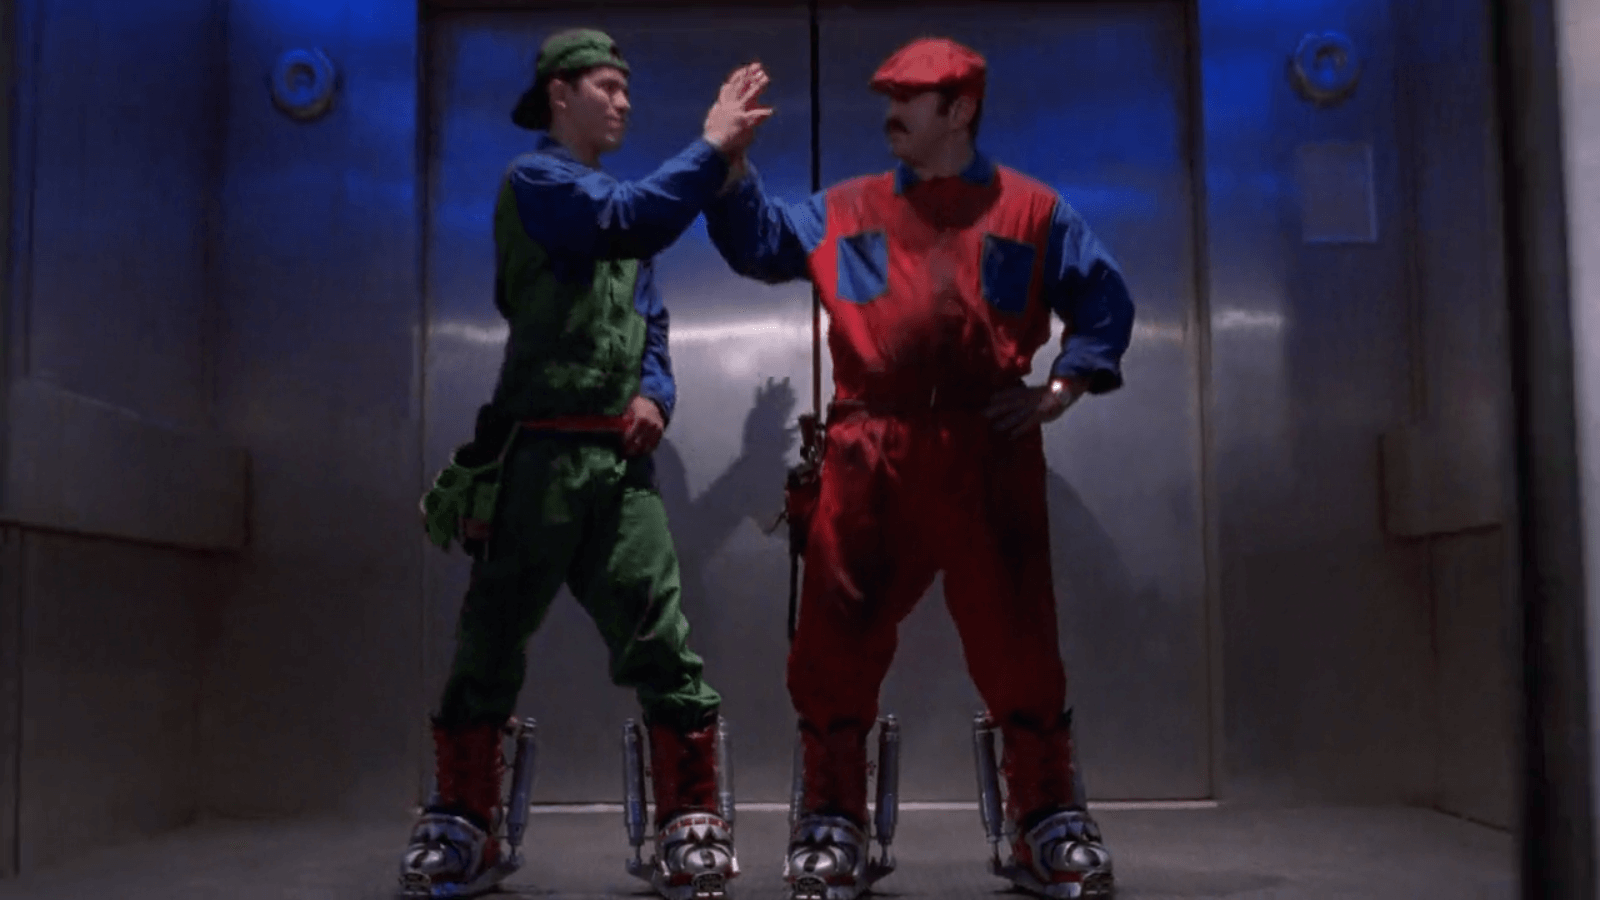 Karakter Mario dan Luigi sedang tos bersama, masing-masing memakai overall hijau dan merah